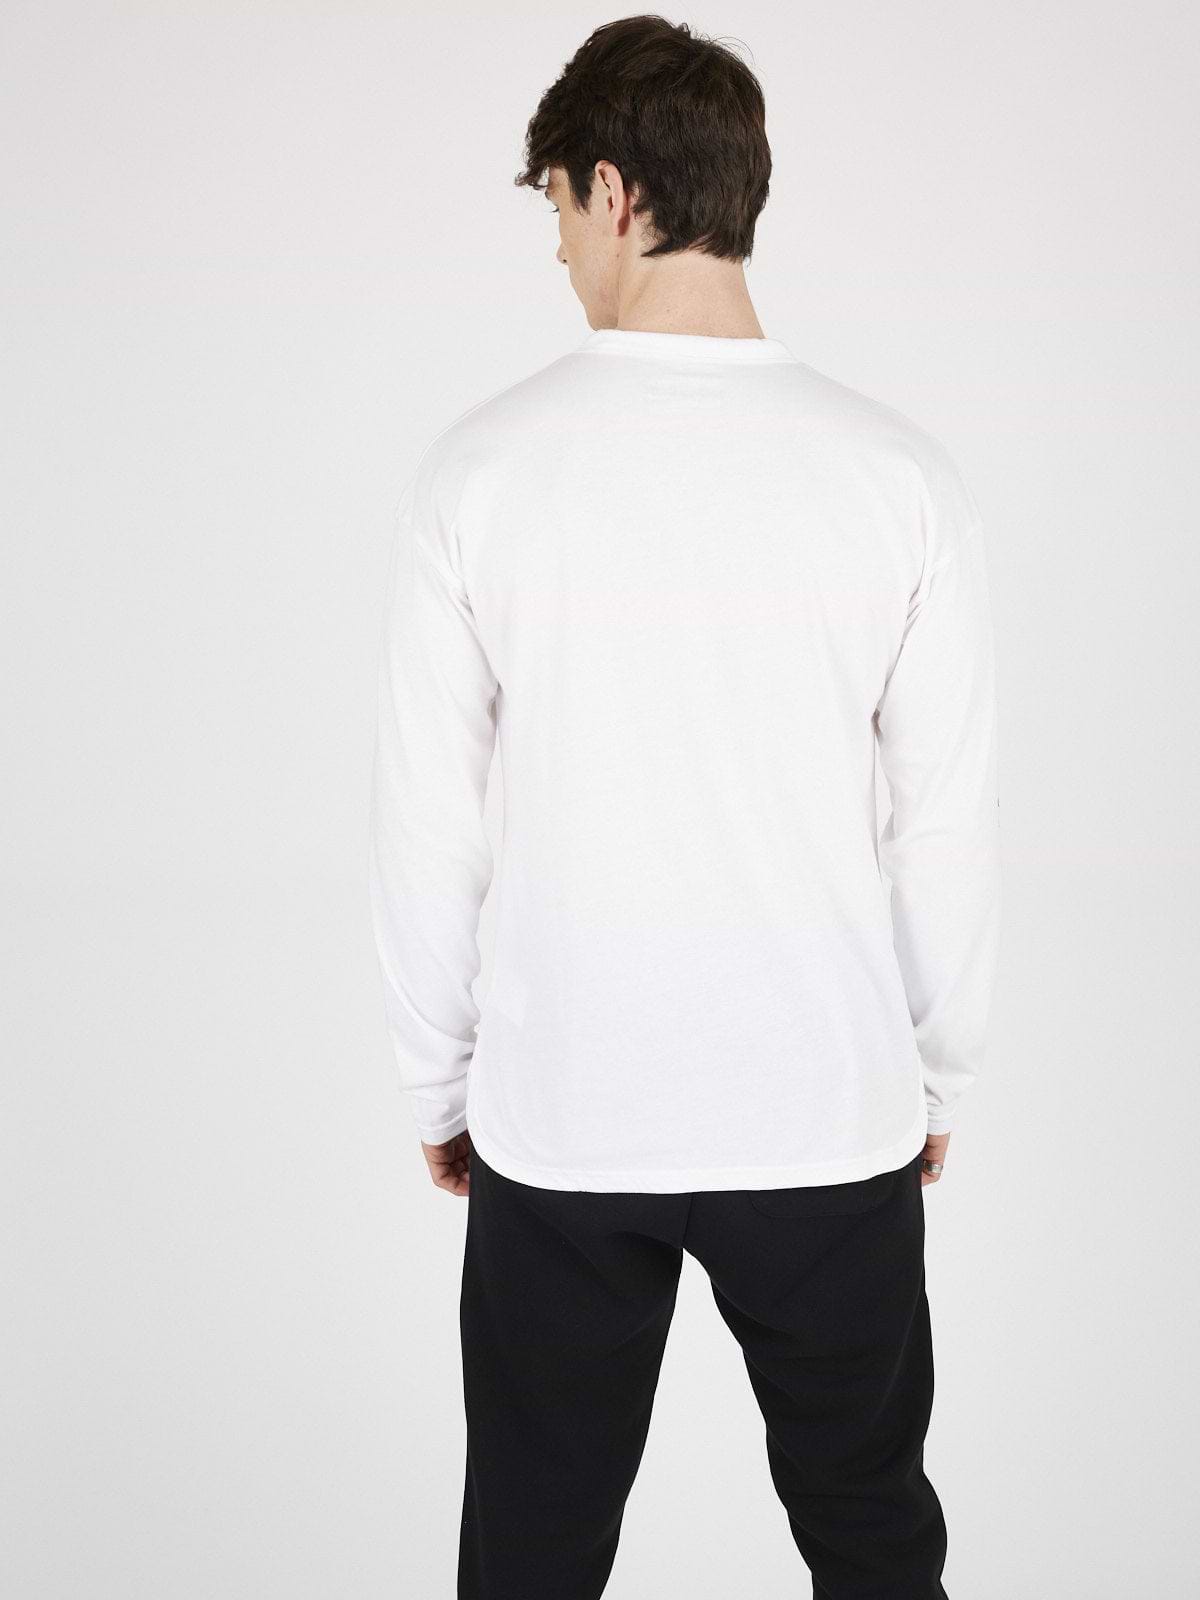 חולצת בייסיק ארוכה עם הדפס לוגו בשרוול- New Balance|ניו בלאנס